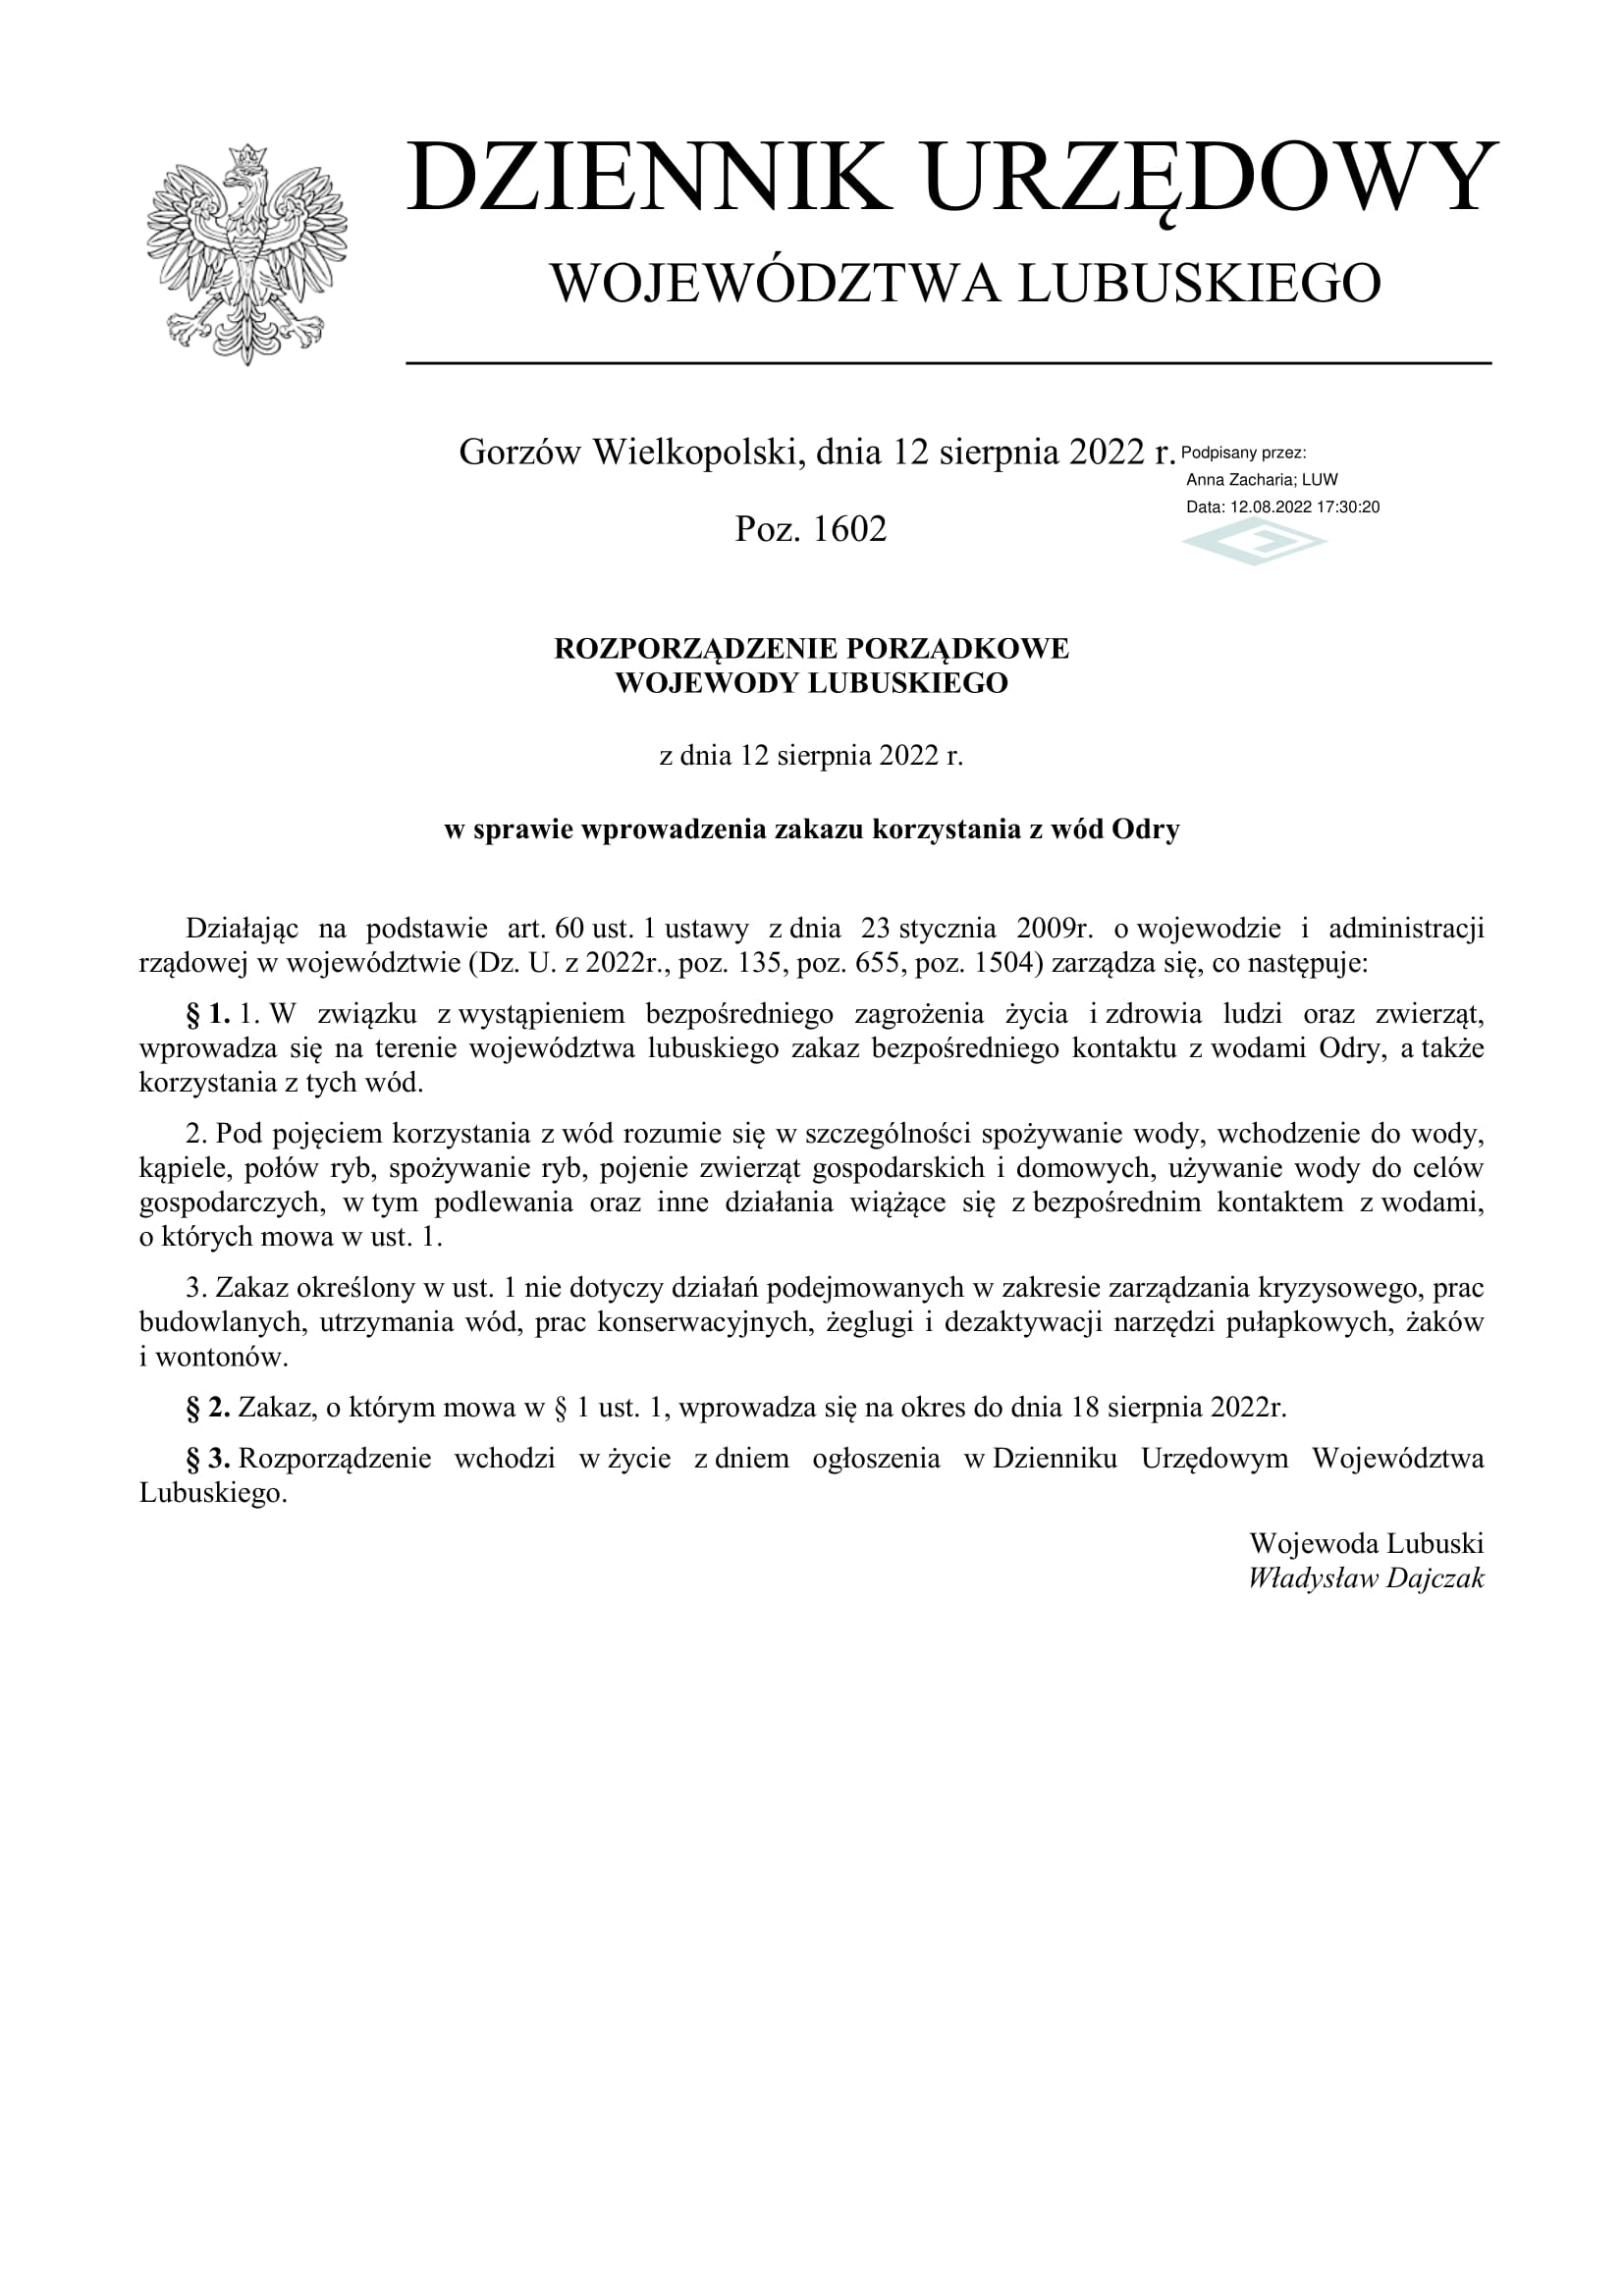 Rozporządzenie Wojewody Lubuskiego w sprawie wprowadzenia zakazu korzystania z wód Odry